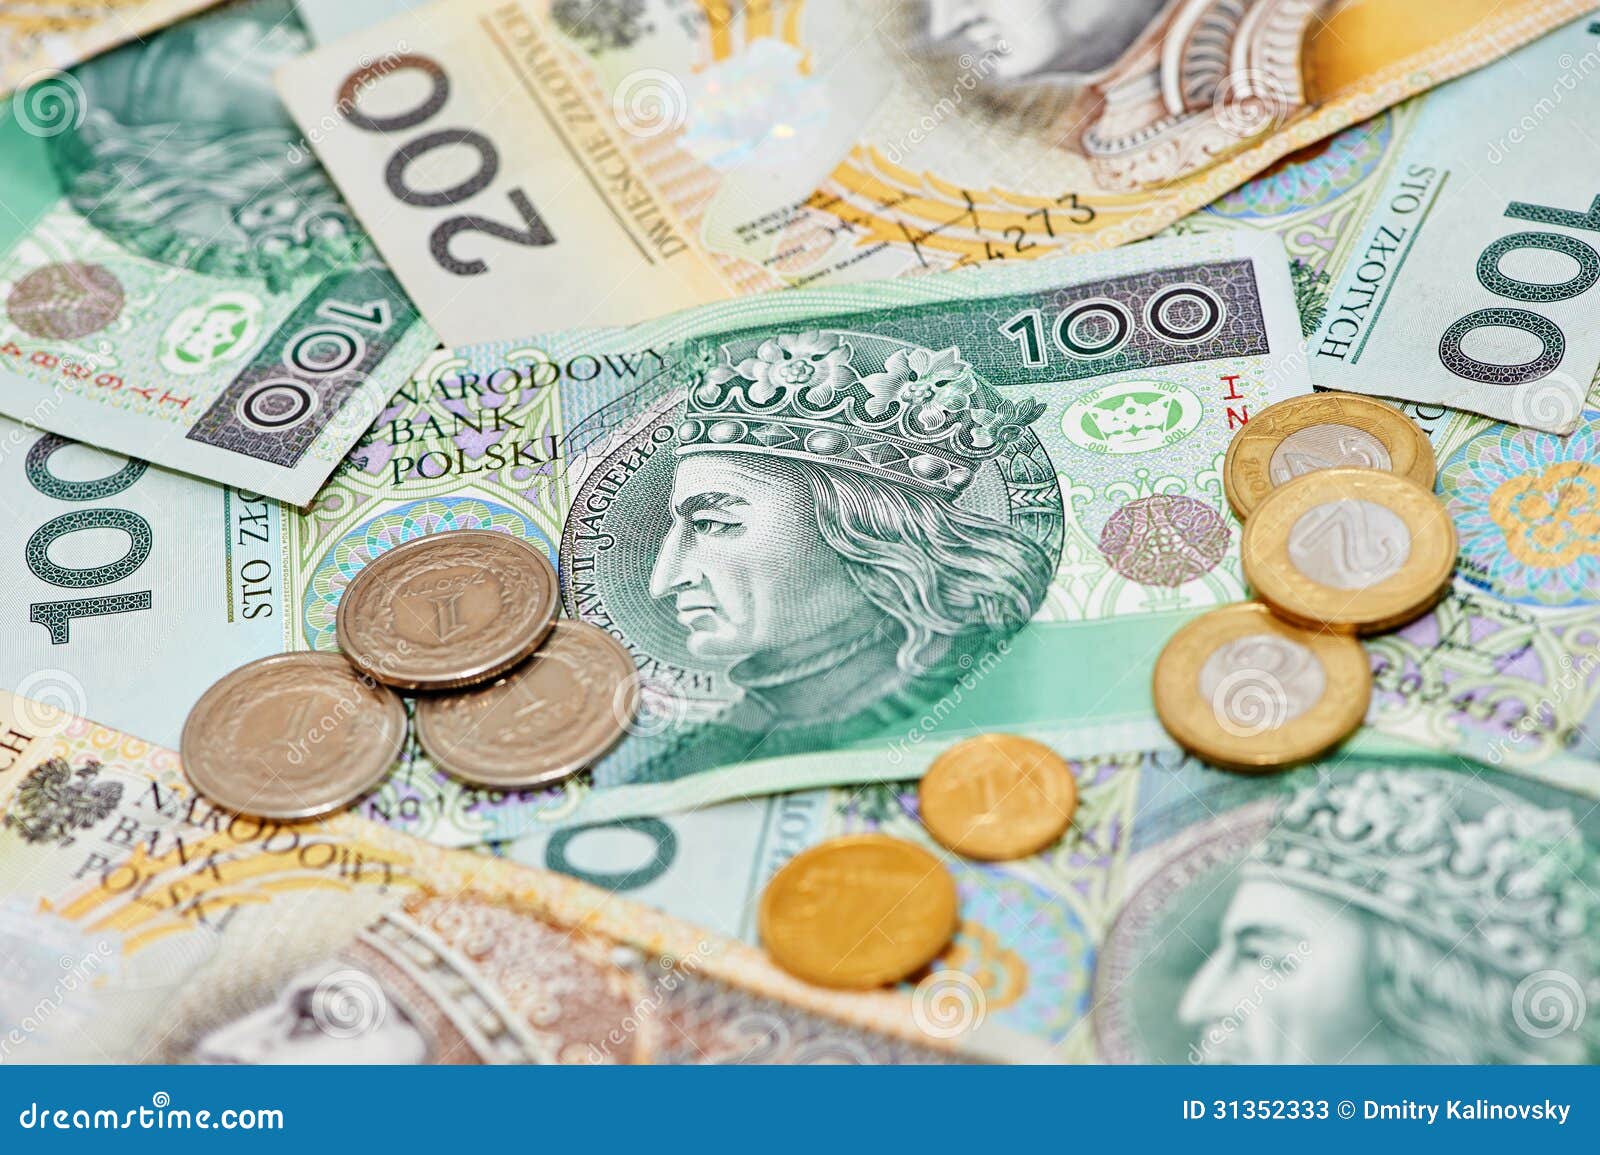 波兰货币、波兰钞票和硬币 库存照片. 图片 包括有 薪金, 商业, 经济, 背包, 广告牌, 附注, 现金 - 137028394